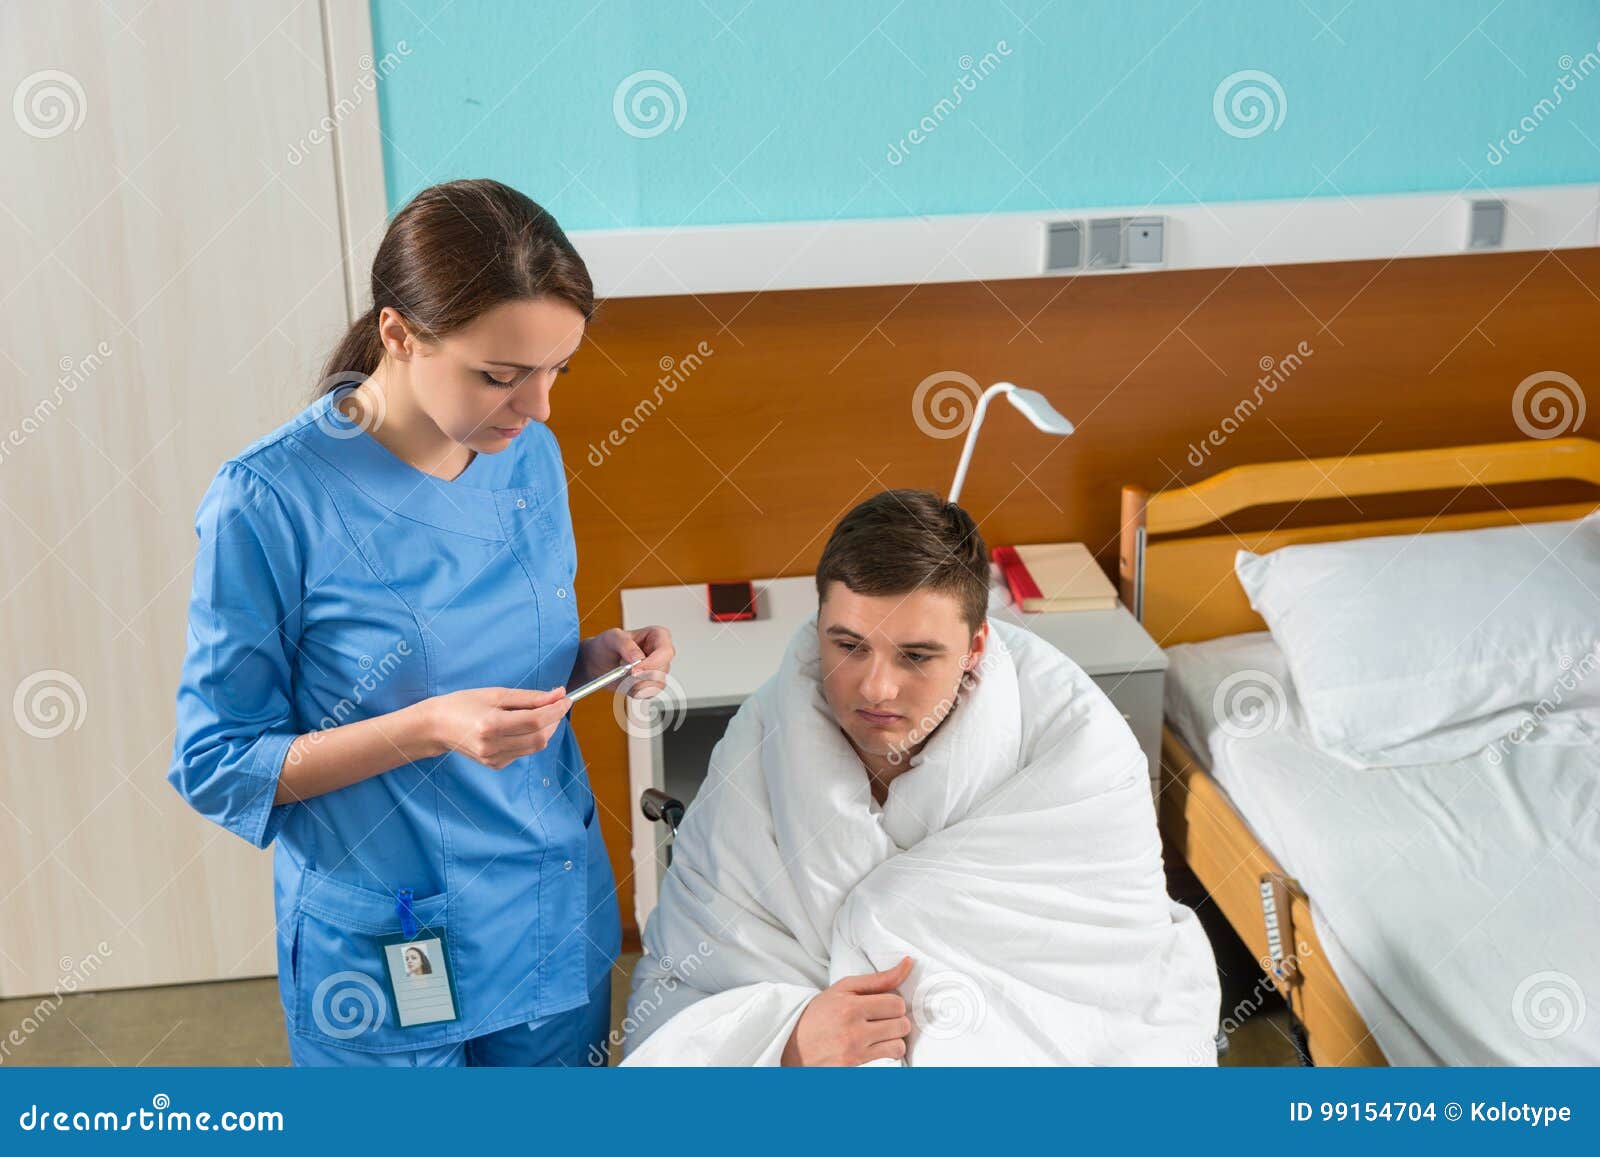 Медсестра пришла больному. Медсестра с градусником. Градусник в палатах больницы. Медсестра пришла к пациенту в палату. Медсестра с градусником фото.